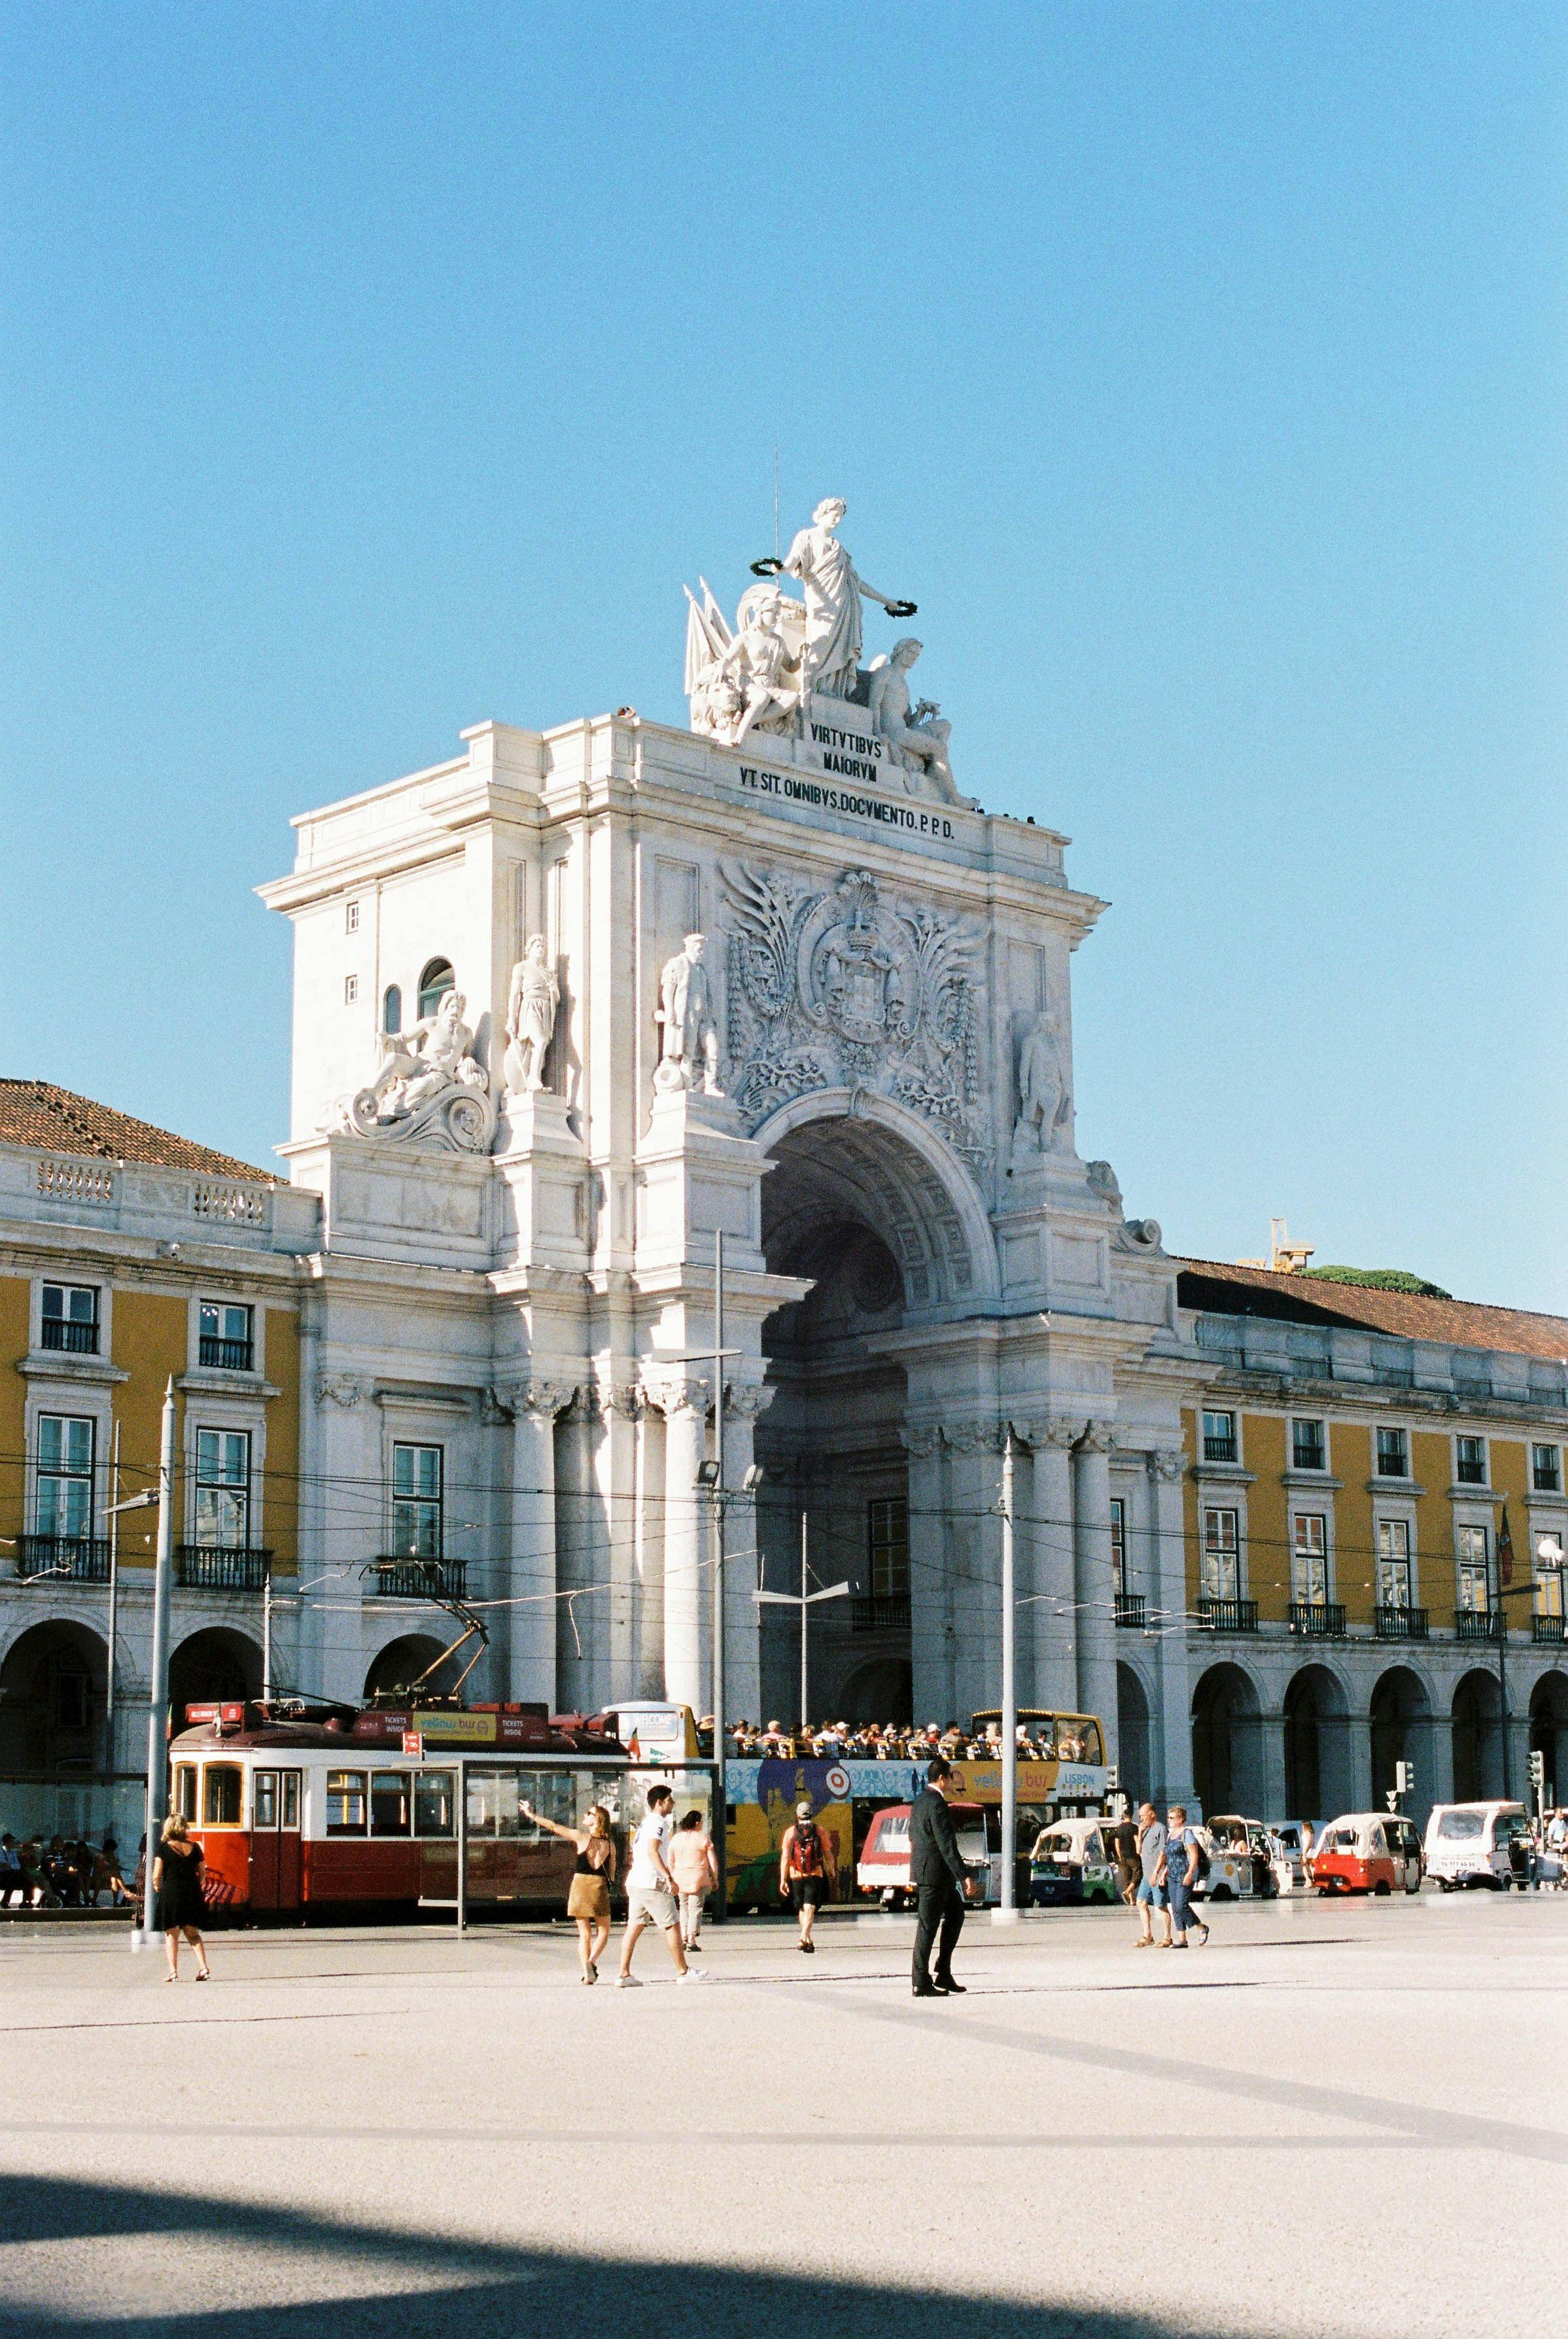 Praça do Comércio in Lisbon, Portugal.